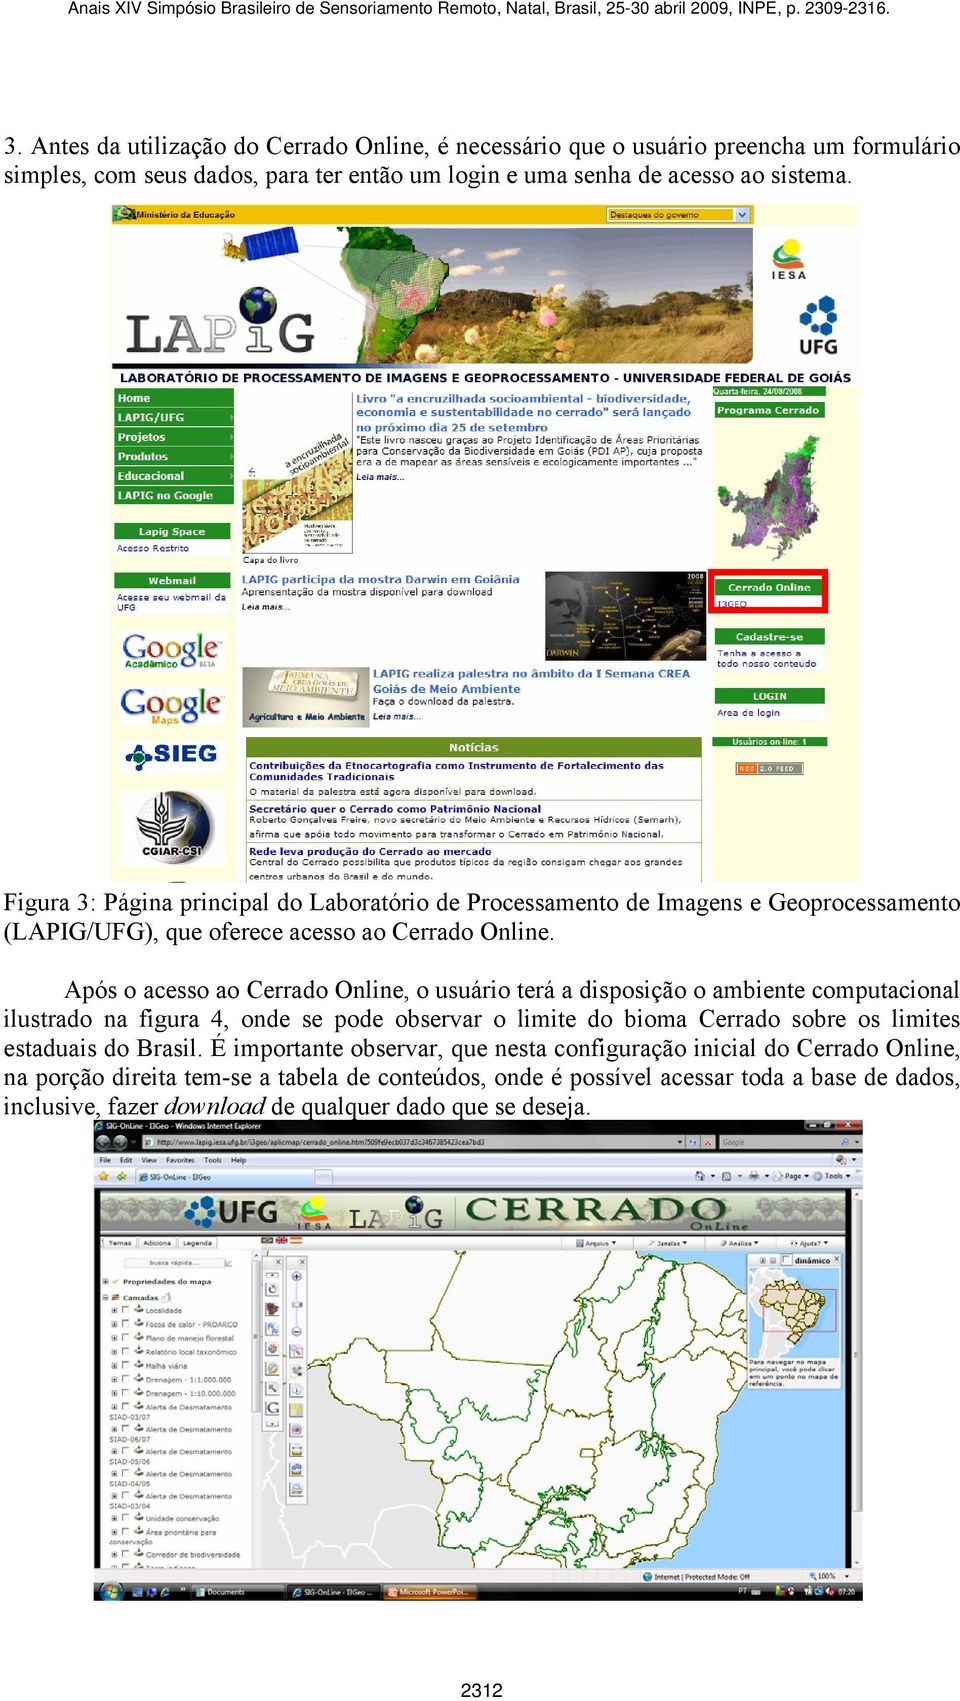 Após o acesso ao Cerrado Online, o usuário terá a disposição o ambiente computacional ilustrado na figura 4, onde se pode observar o limite do bioma Cerrado sobre os limites estaduais